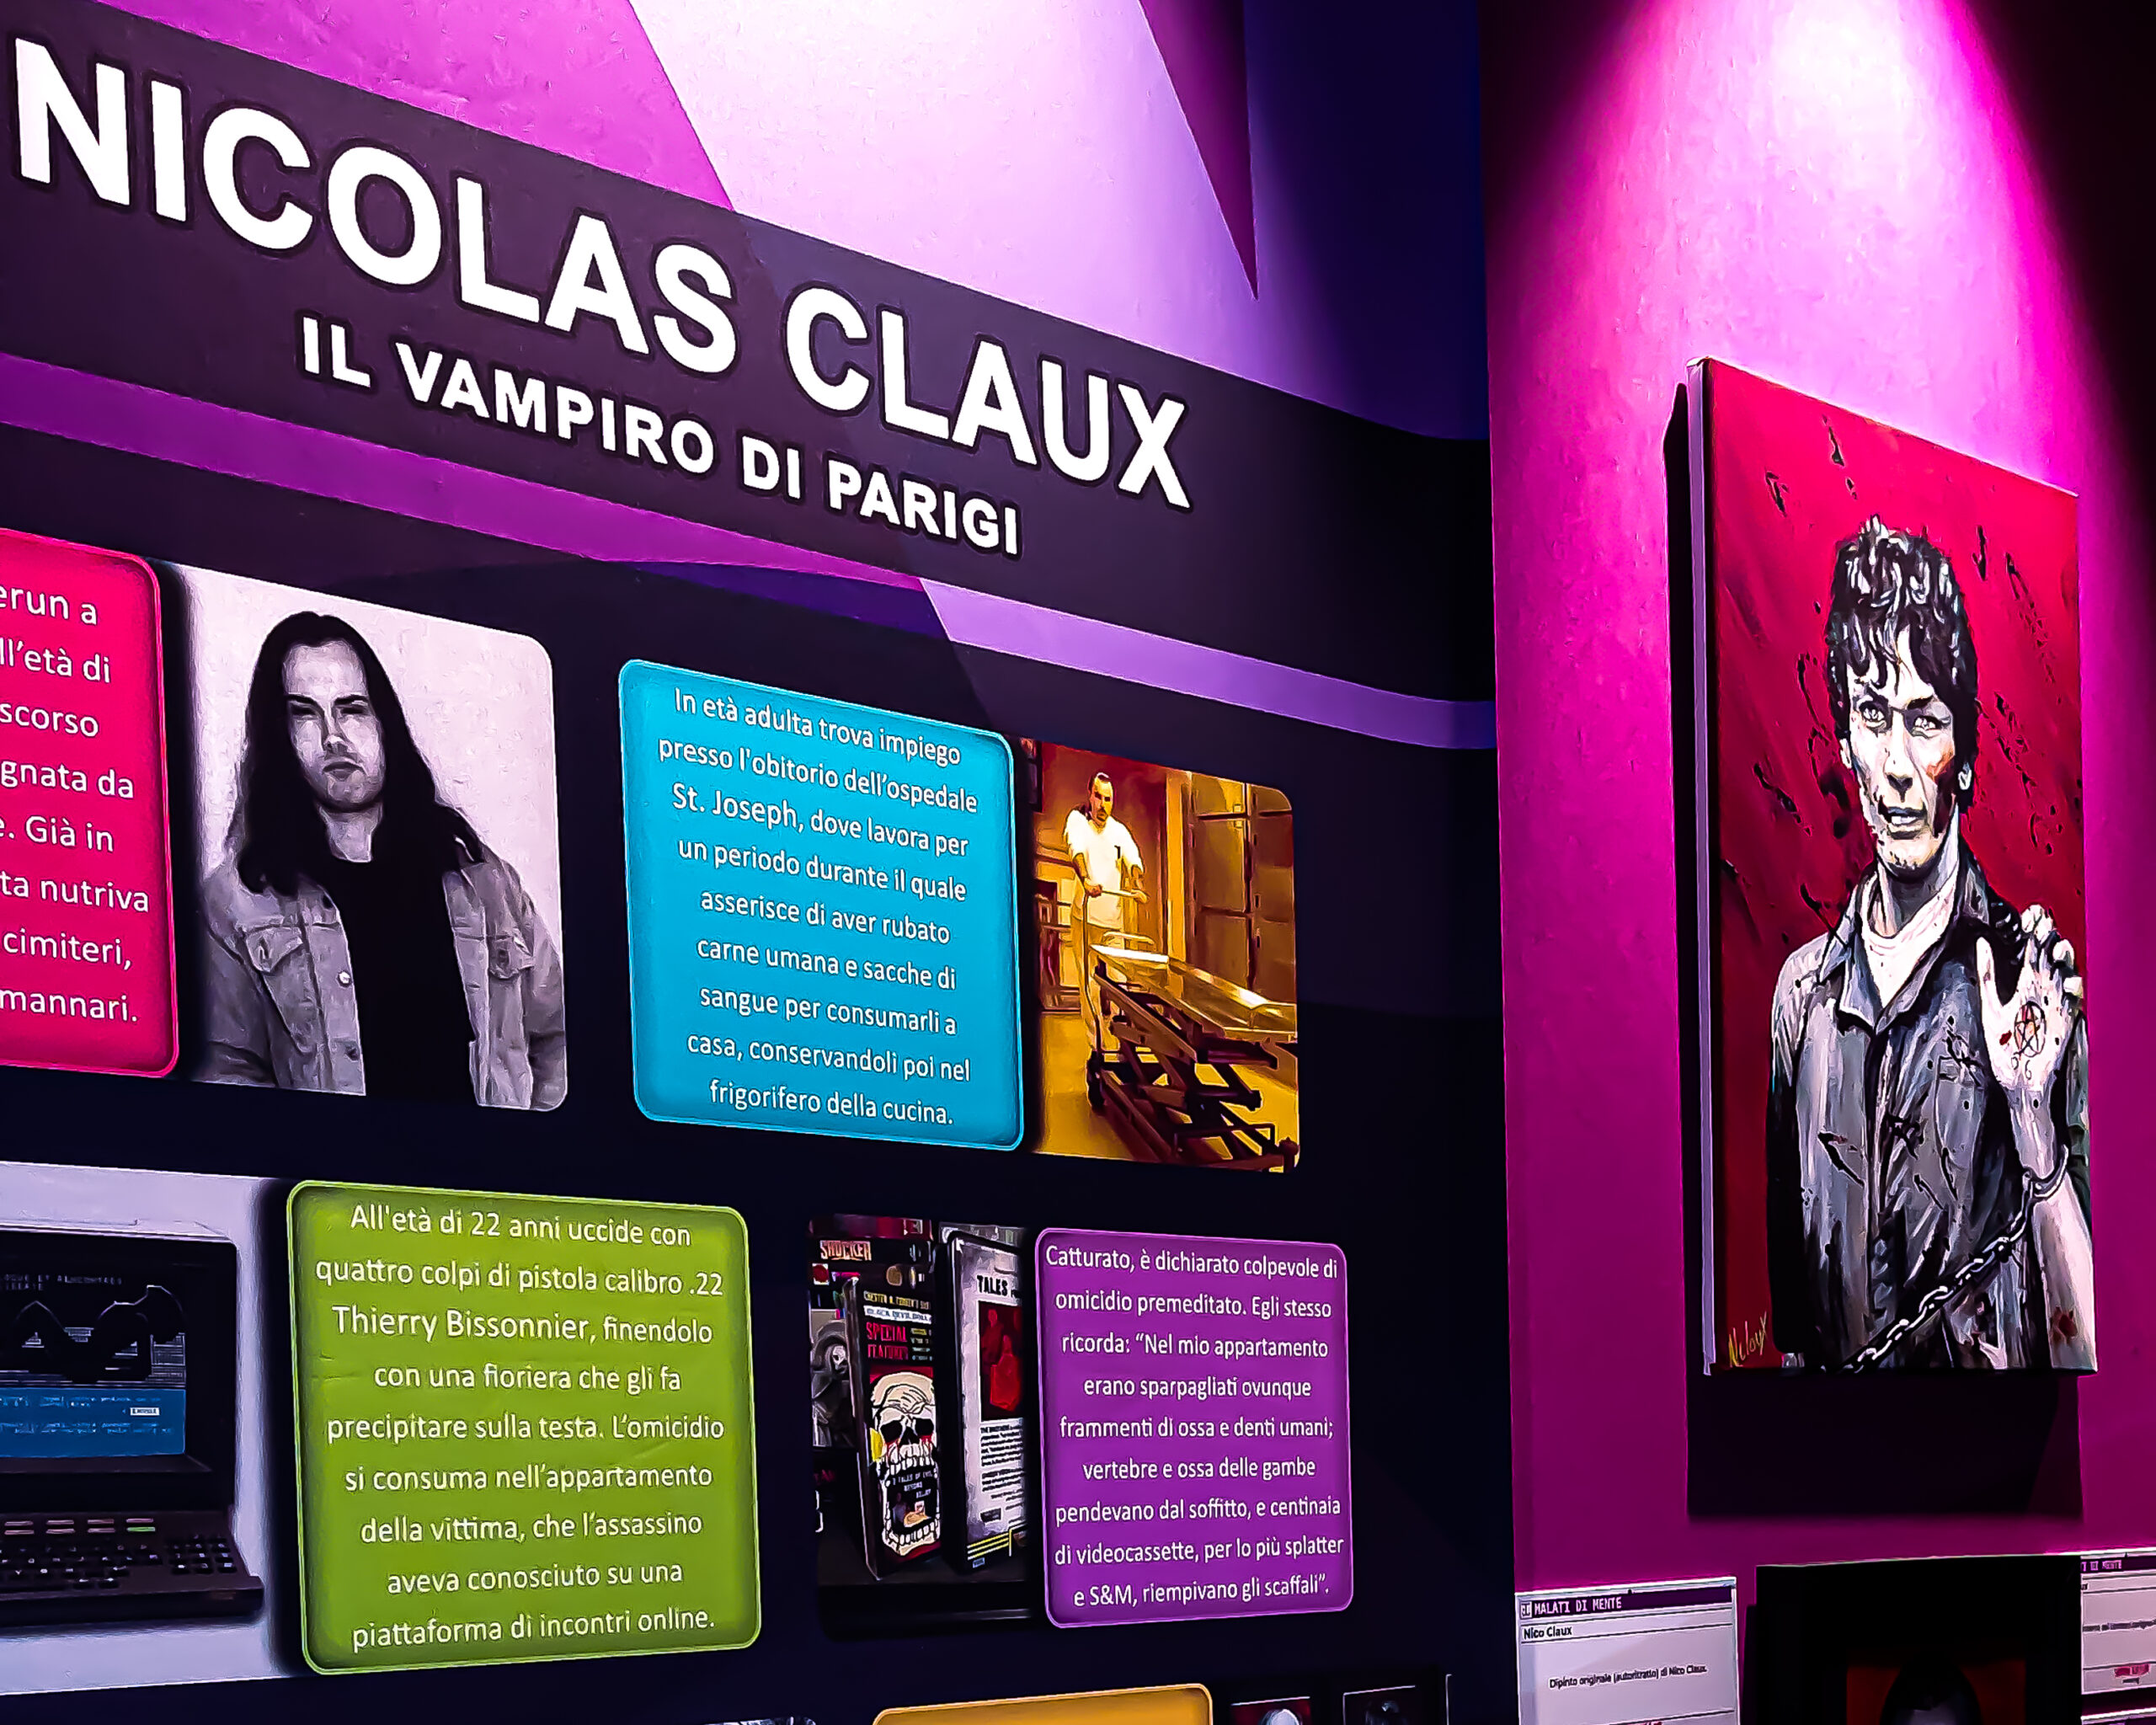 Intervista a Nicolas Claux, il vampiro di Parigi